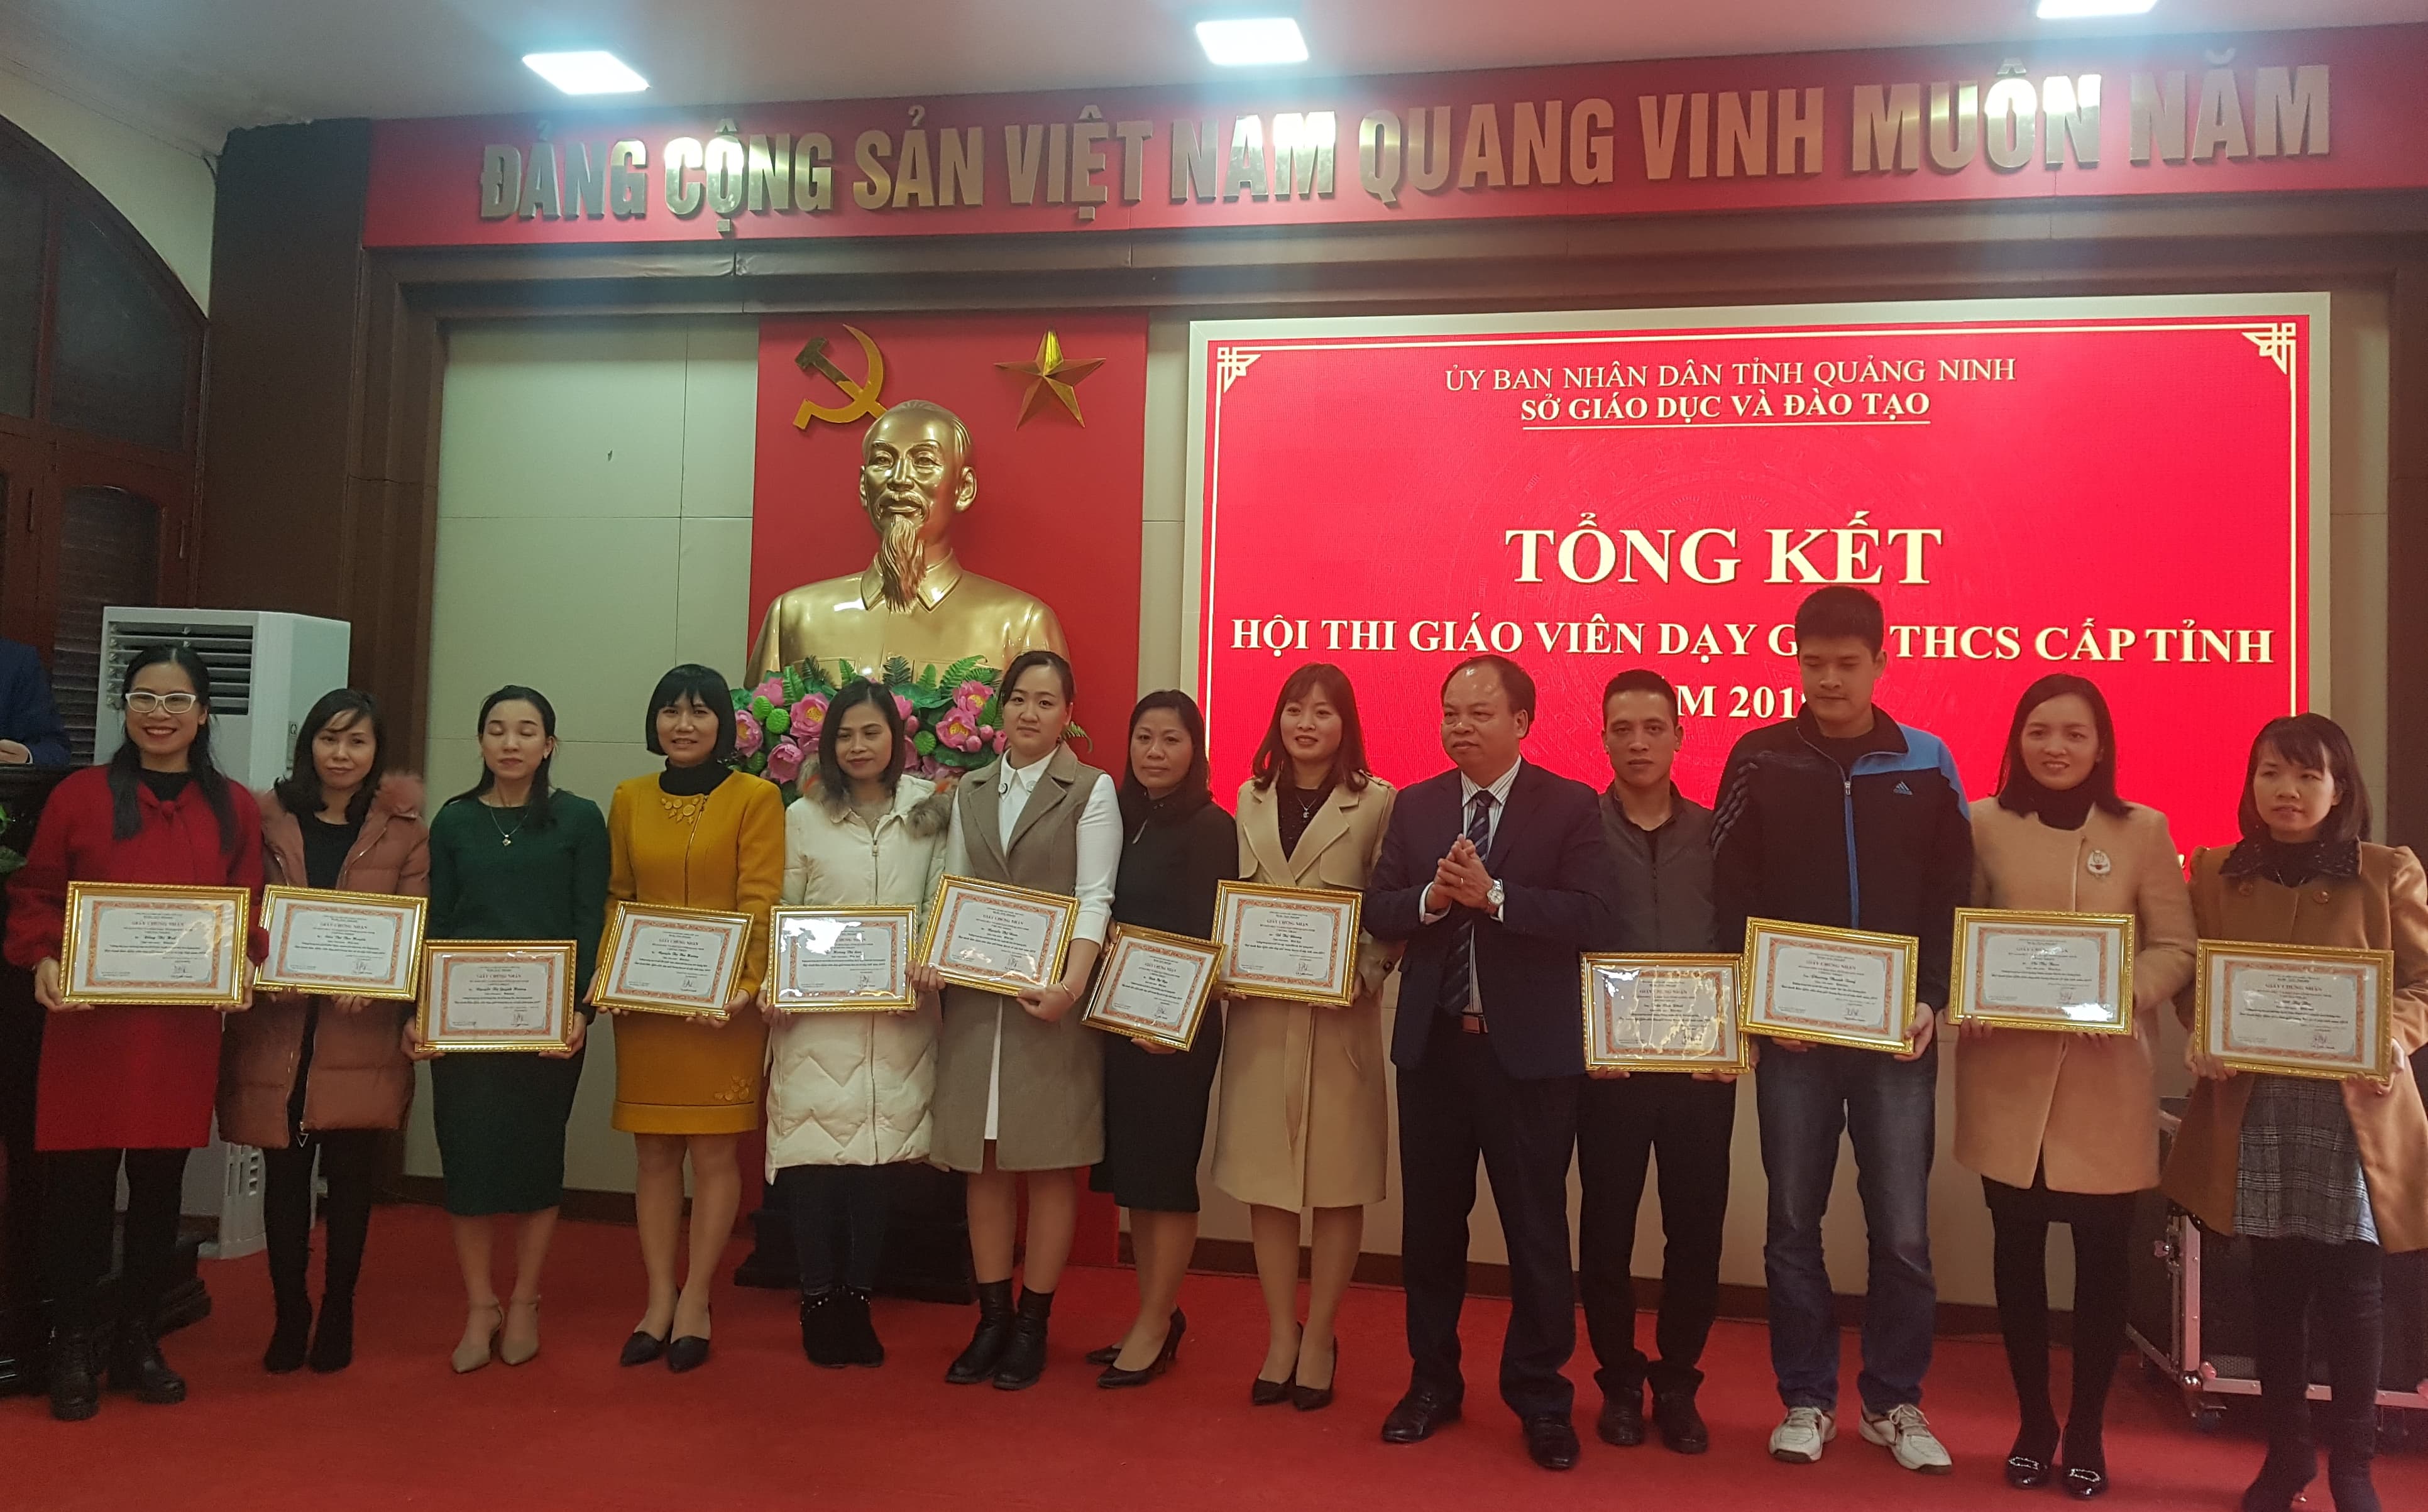 Phó Giáo đốc Sở GDĐT Nguyễn Văn Tuế trao giấy chứng nhận Giáo viên dạy giỏi cấp tỉnh cho các đồng chí giáo viên môn Hóa học.